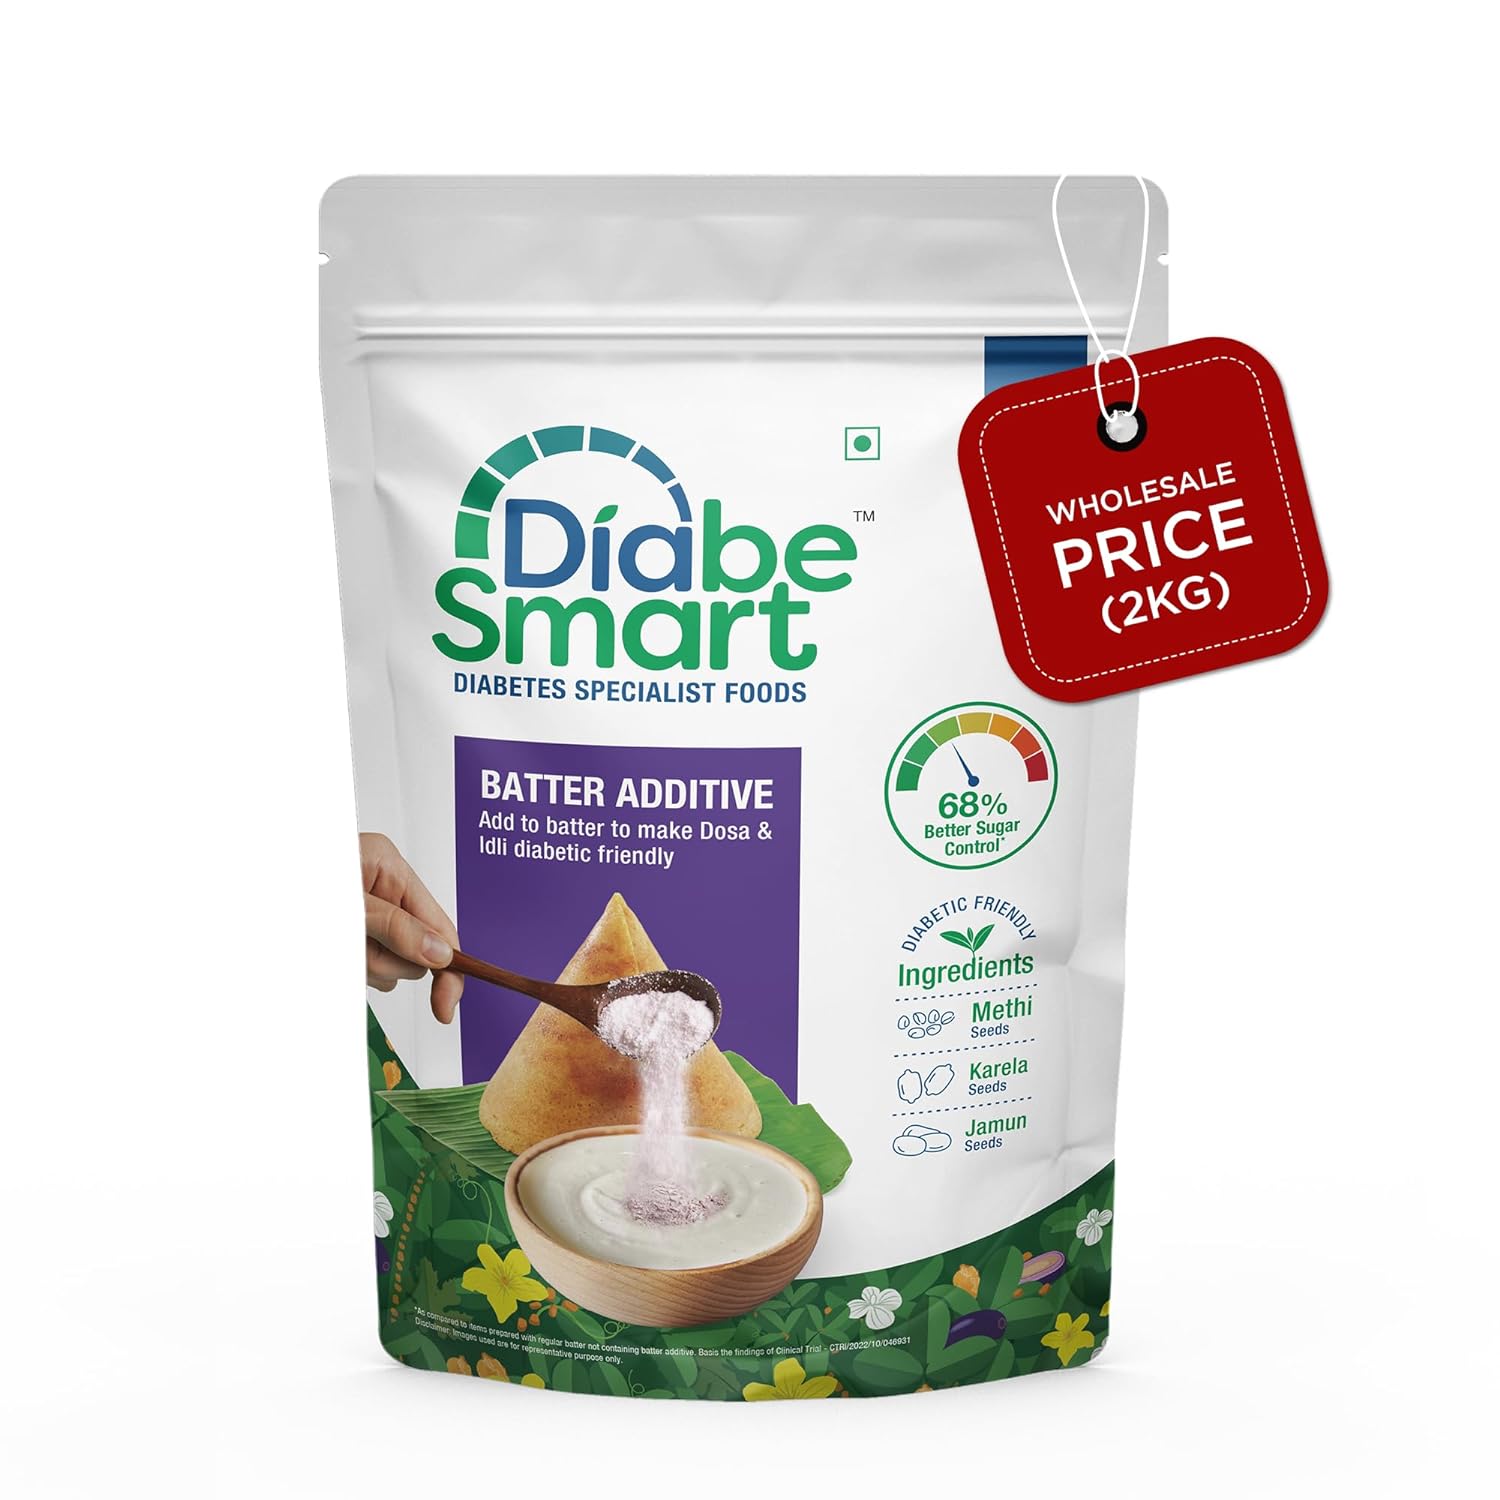 DiabeSmart Diabetic Mix for Batter 2Kg | Tested for 50% Better Blood Sugar Level